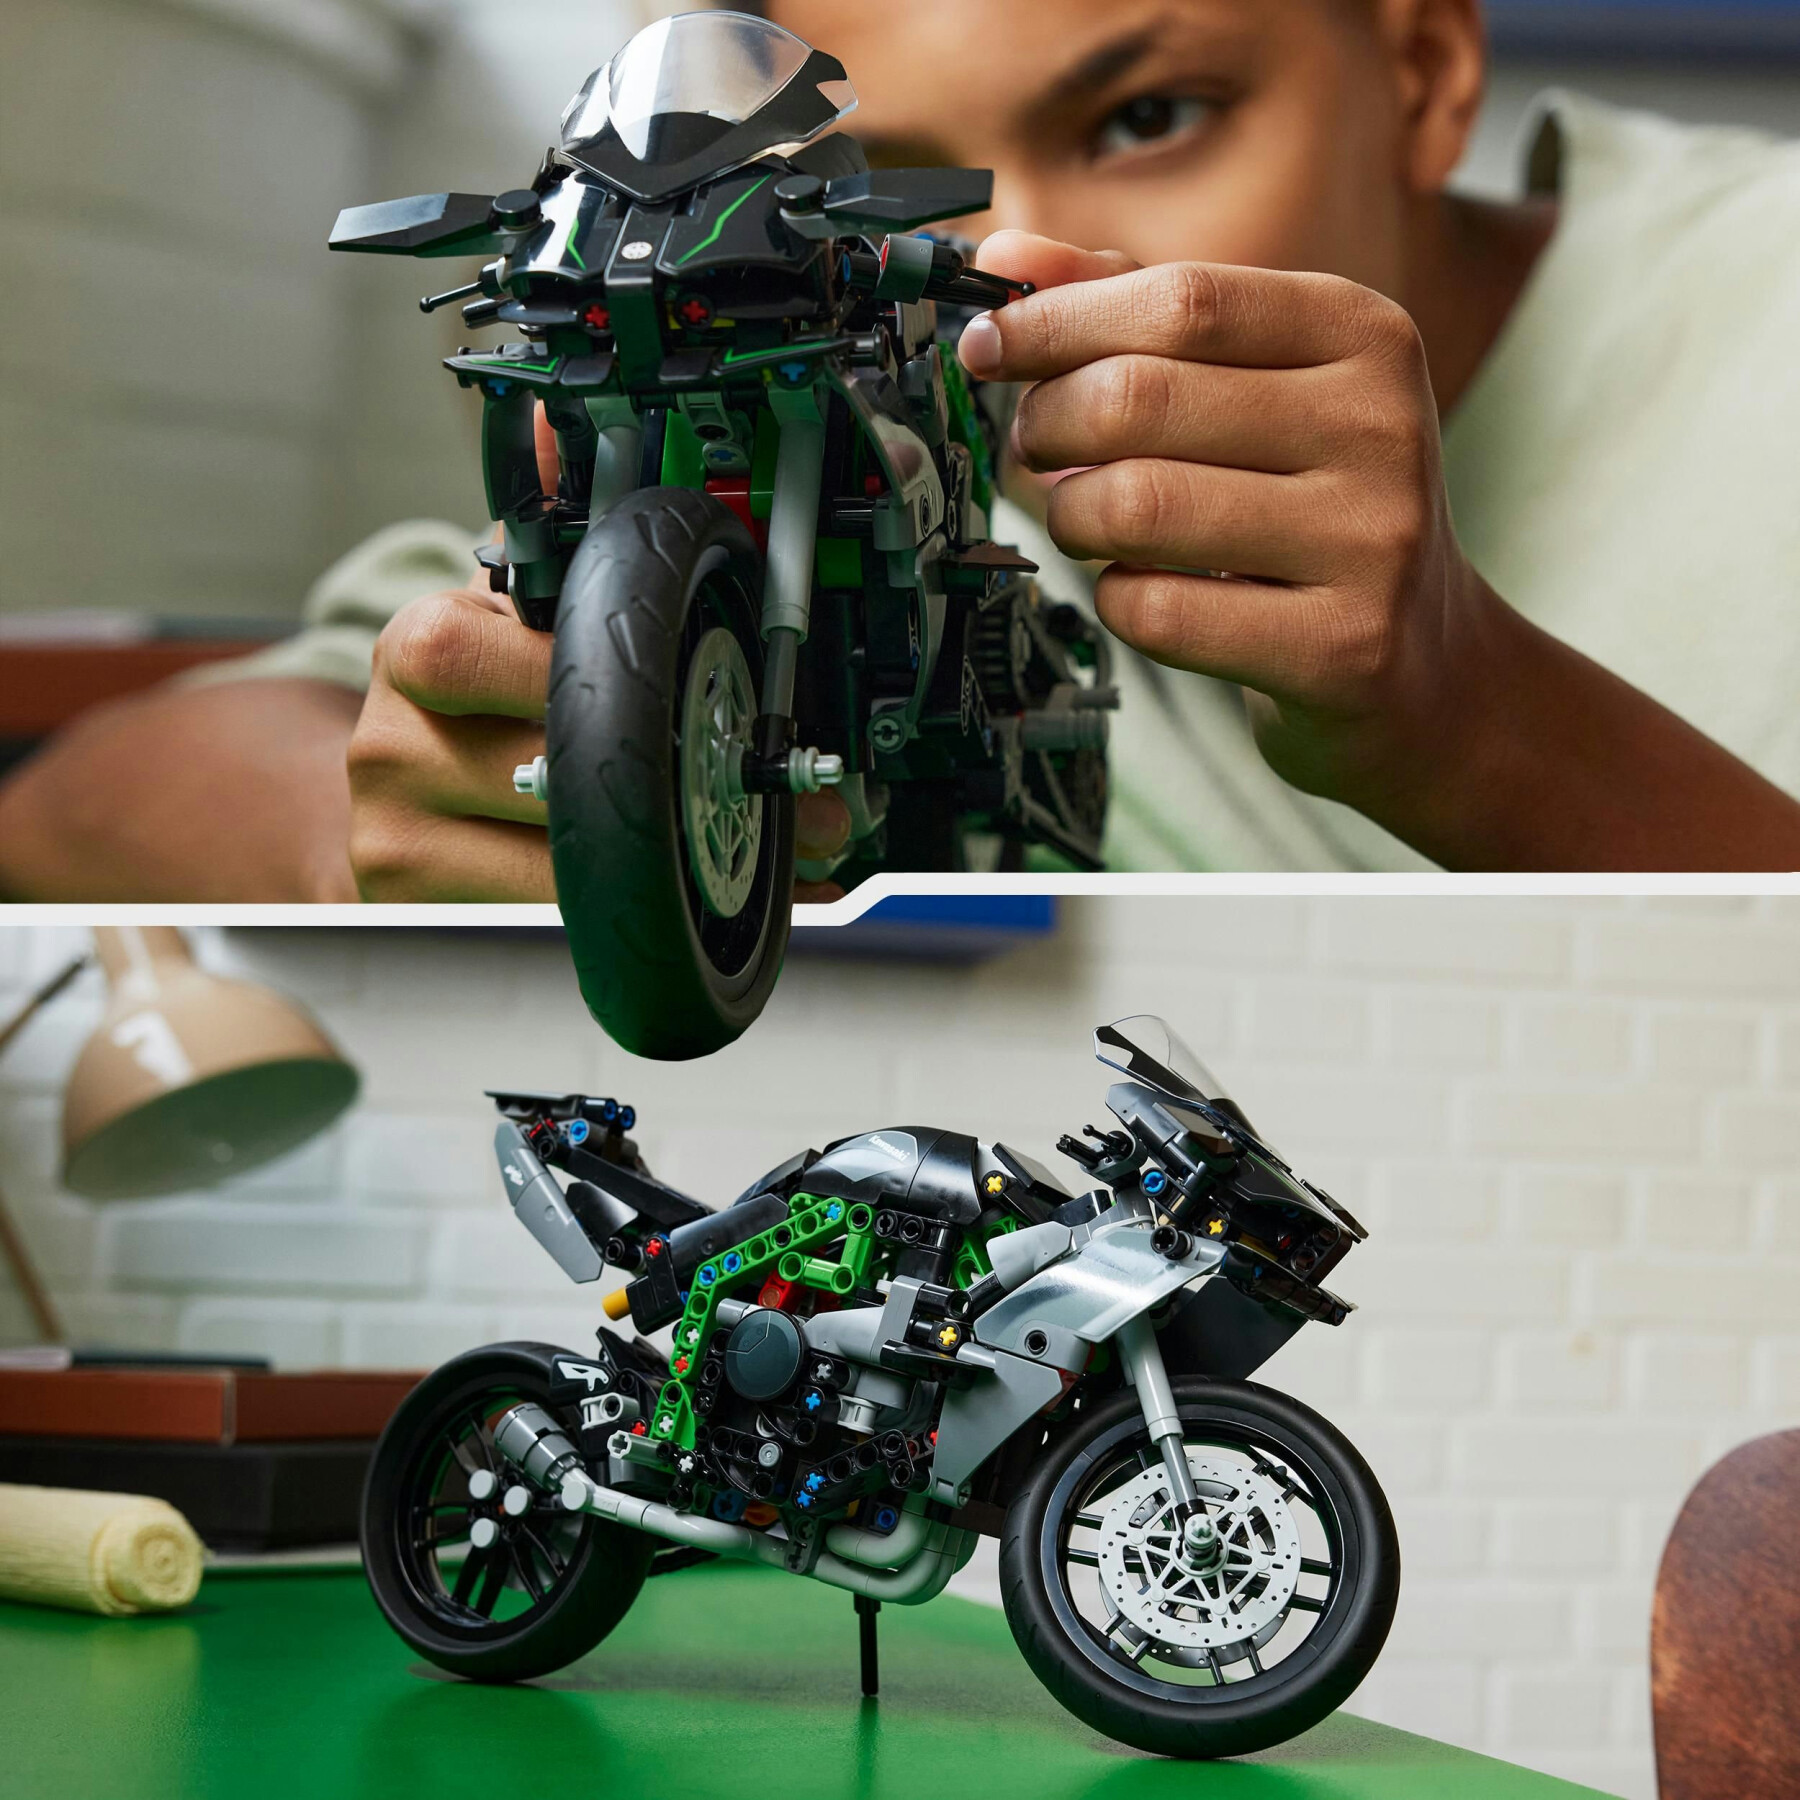 Lego technic 42170 motocicletta kawasaki ninja h2r, giochi per bambini 10+, modellino di moto giocattolo in scala da costruire - LEGO TECHNIC